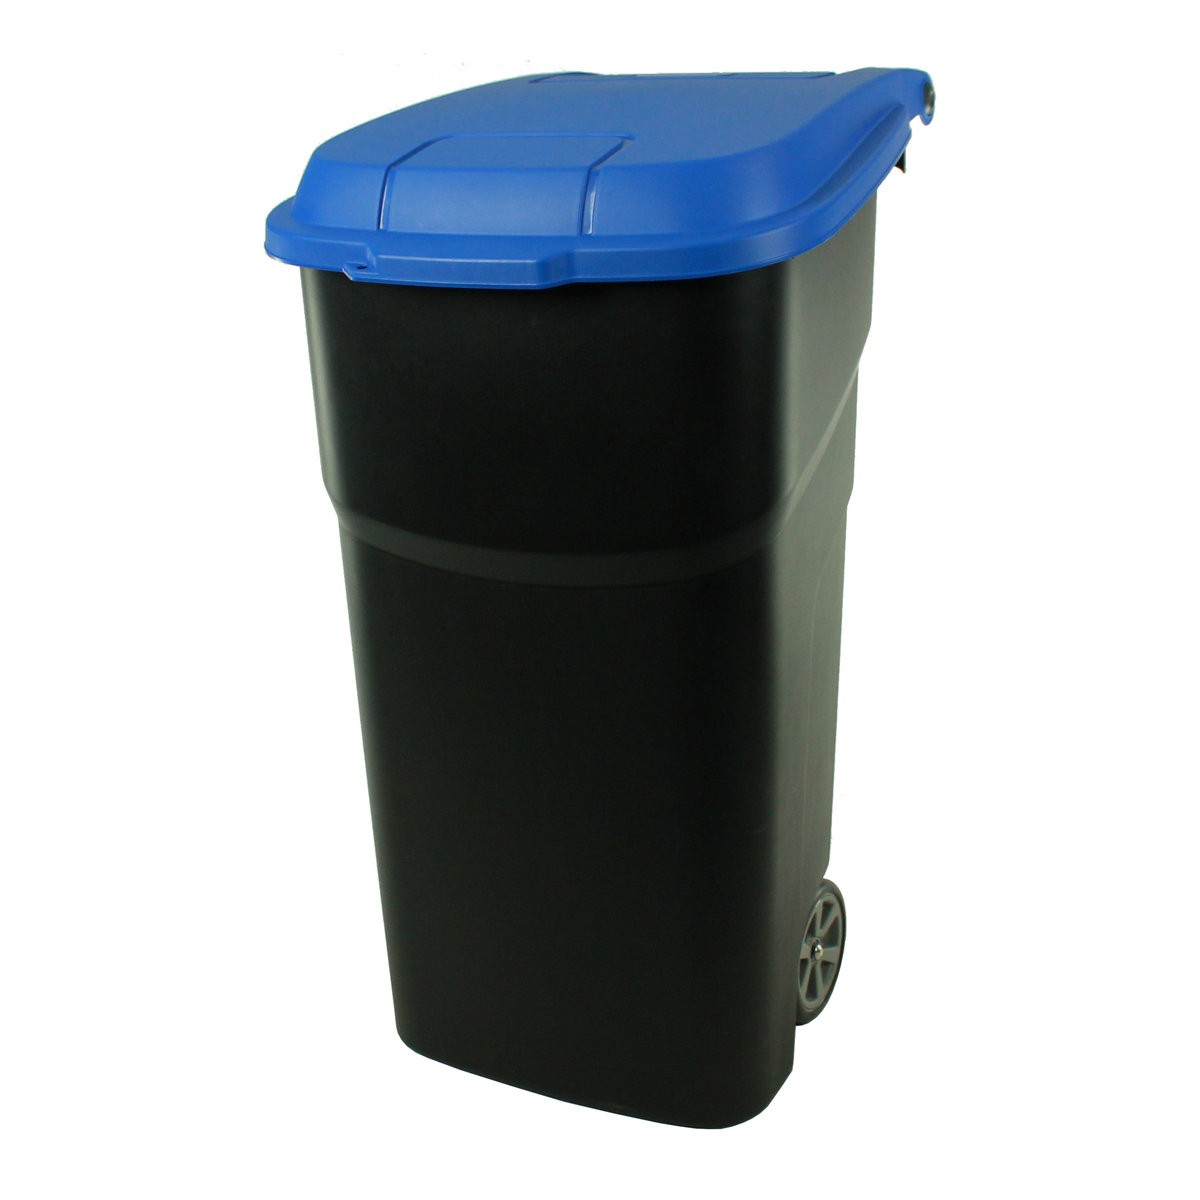 Rotho kubeł na śmieci z pokrywą oraz na kółkach z plastiku, pojemność 100 l, 4510106645